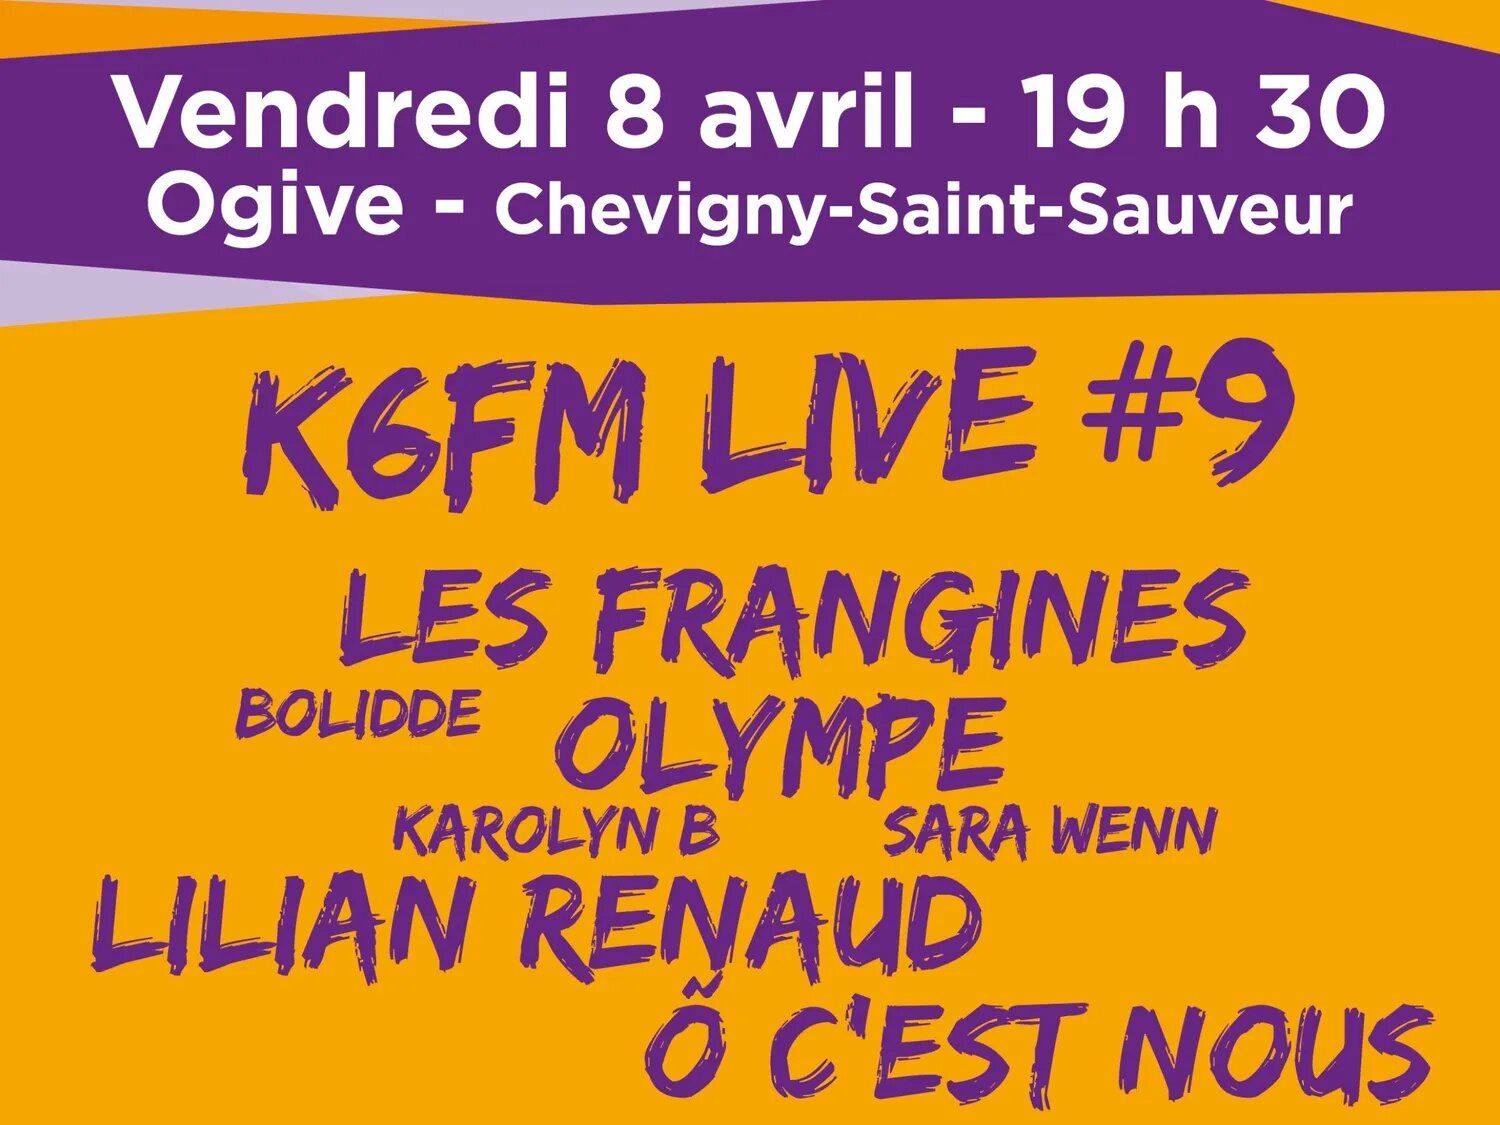 K6FM Live, c’est ce vendredi soir à Chevigny-Saint-Sauveur